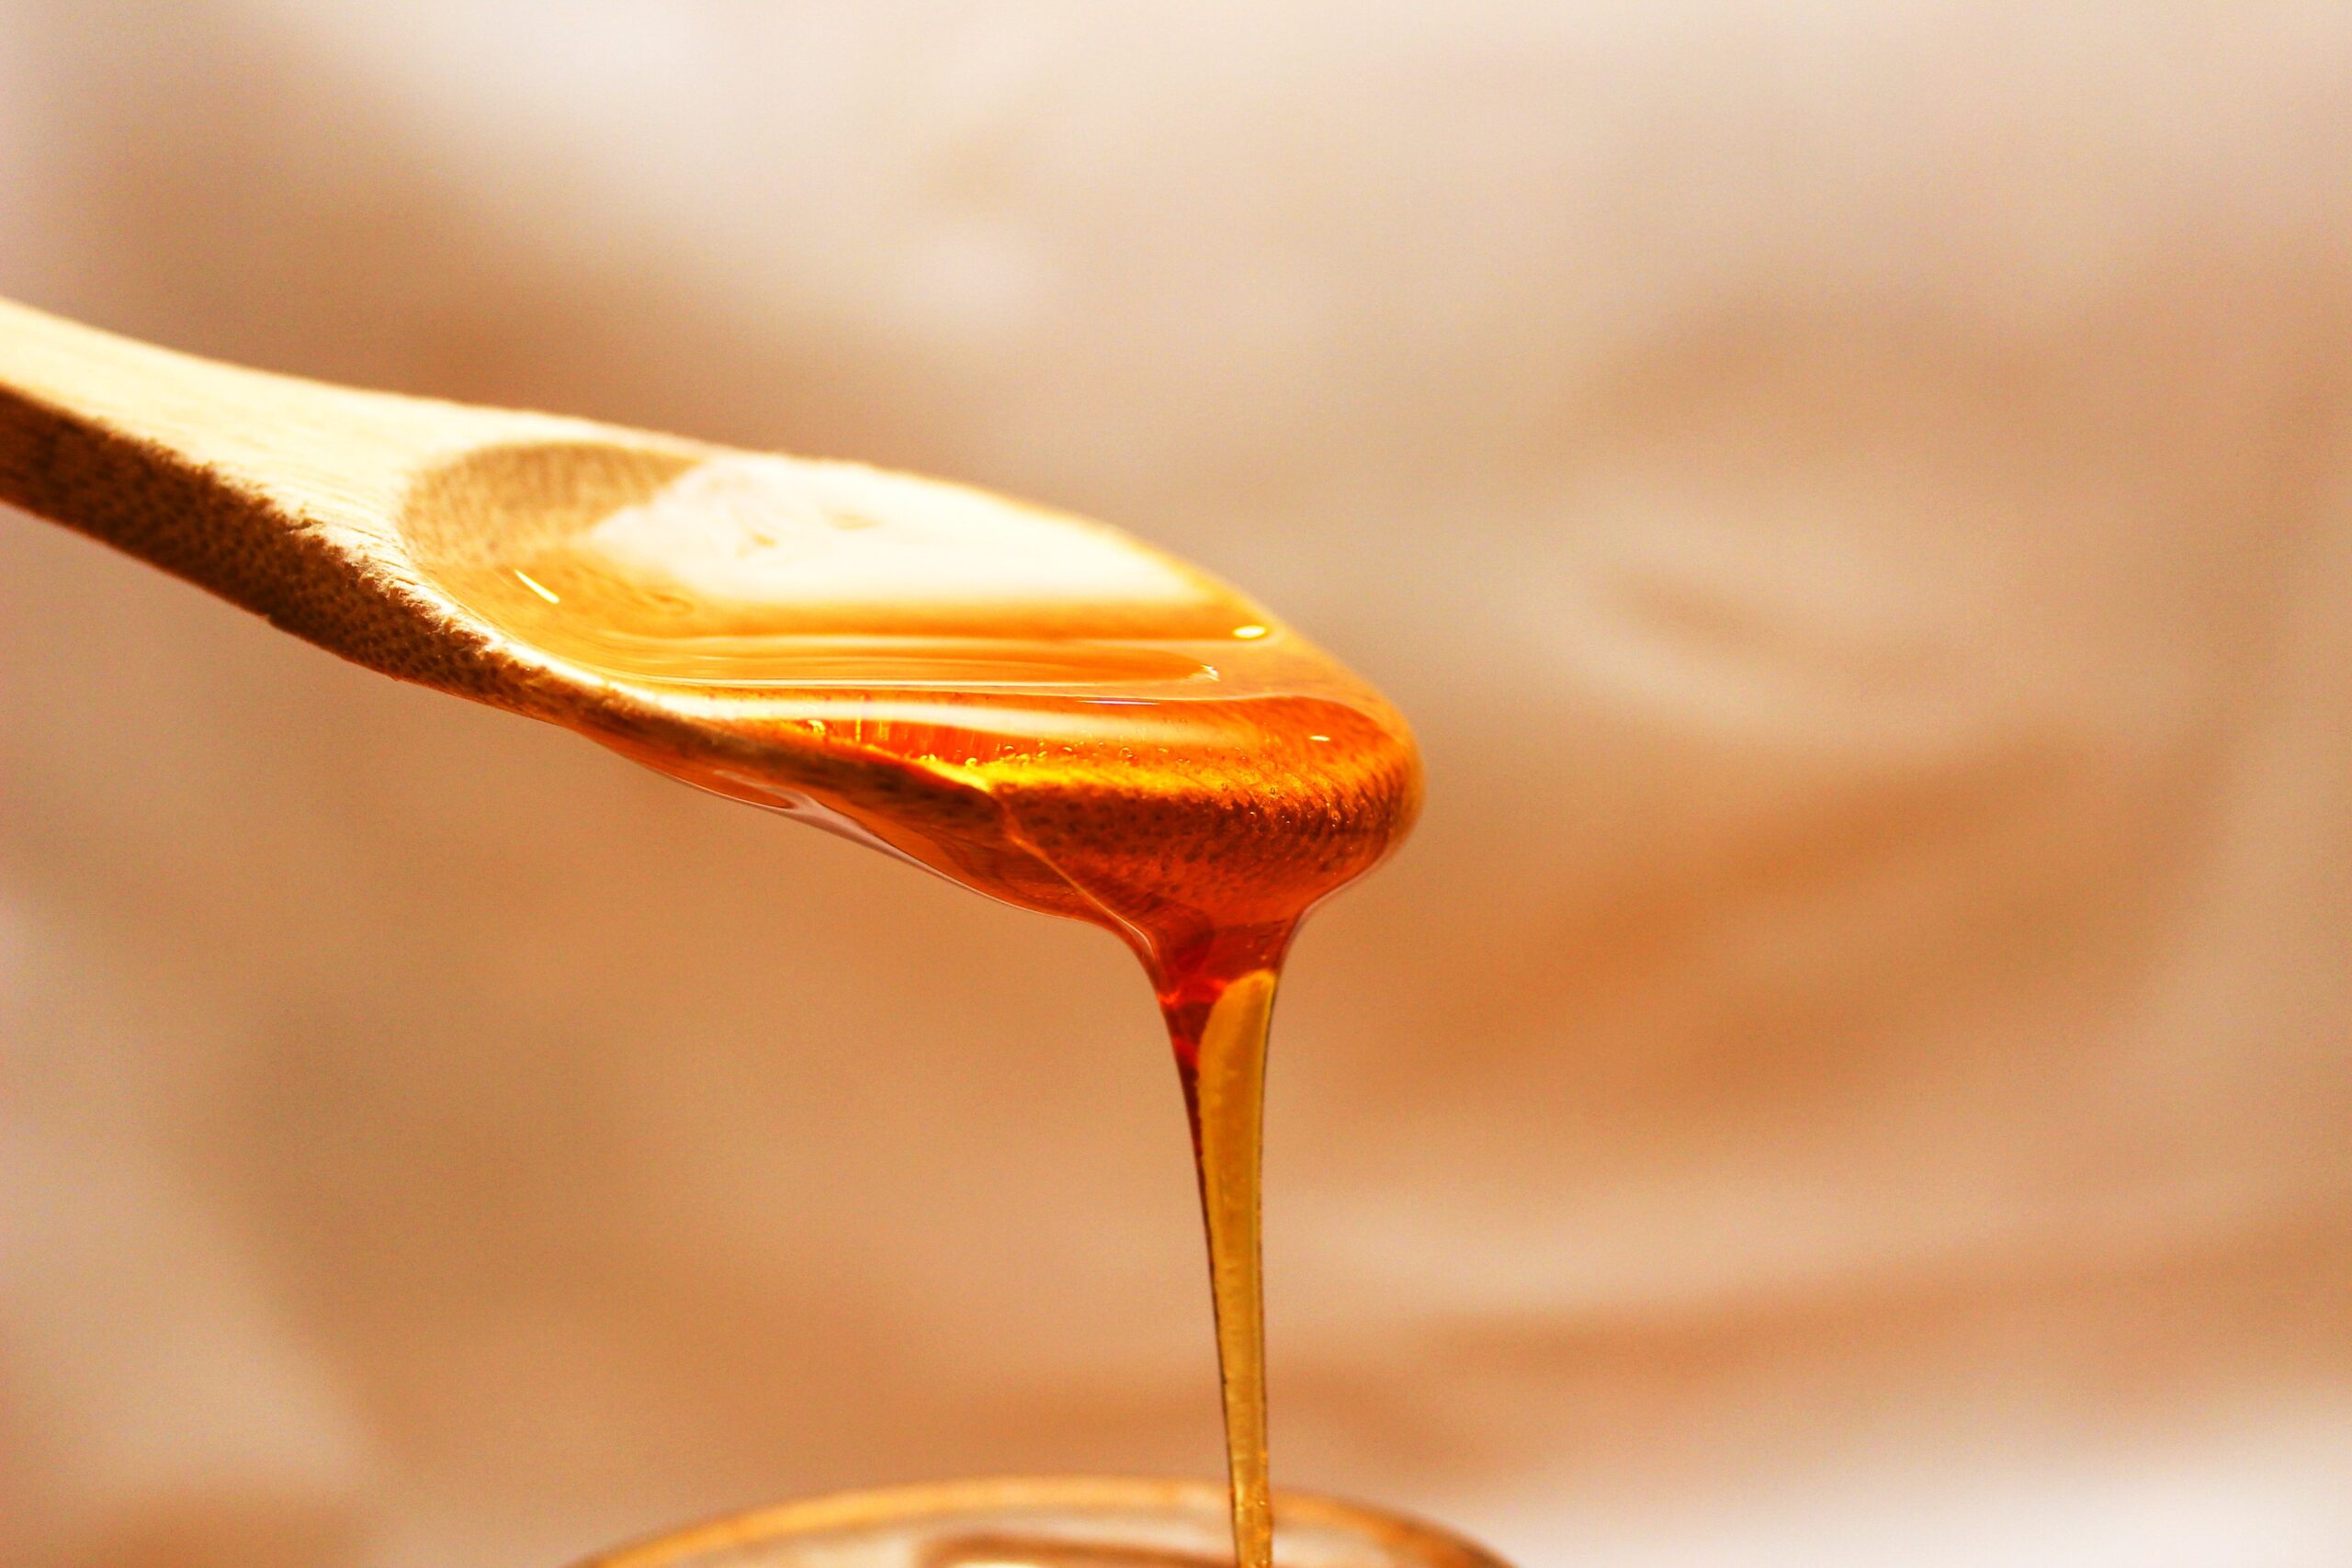 Płynny miód pszczeli – naturalny słodzik z korzyściami zdrowotnymi